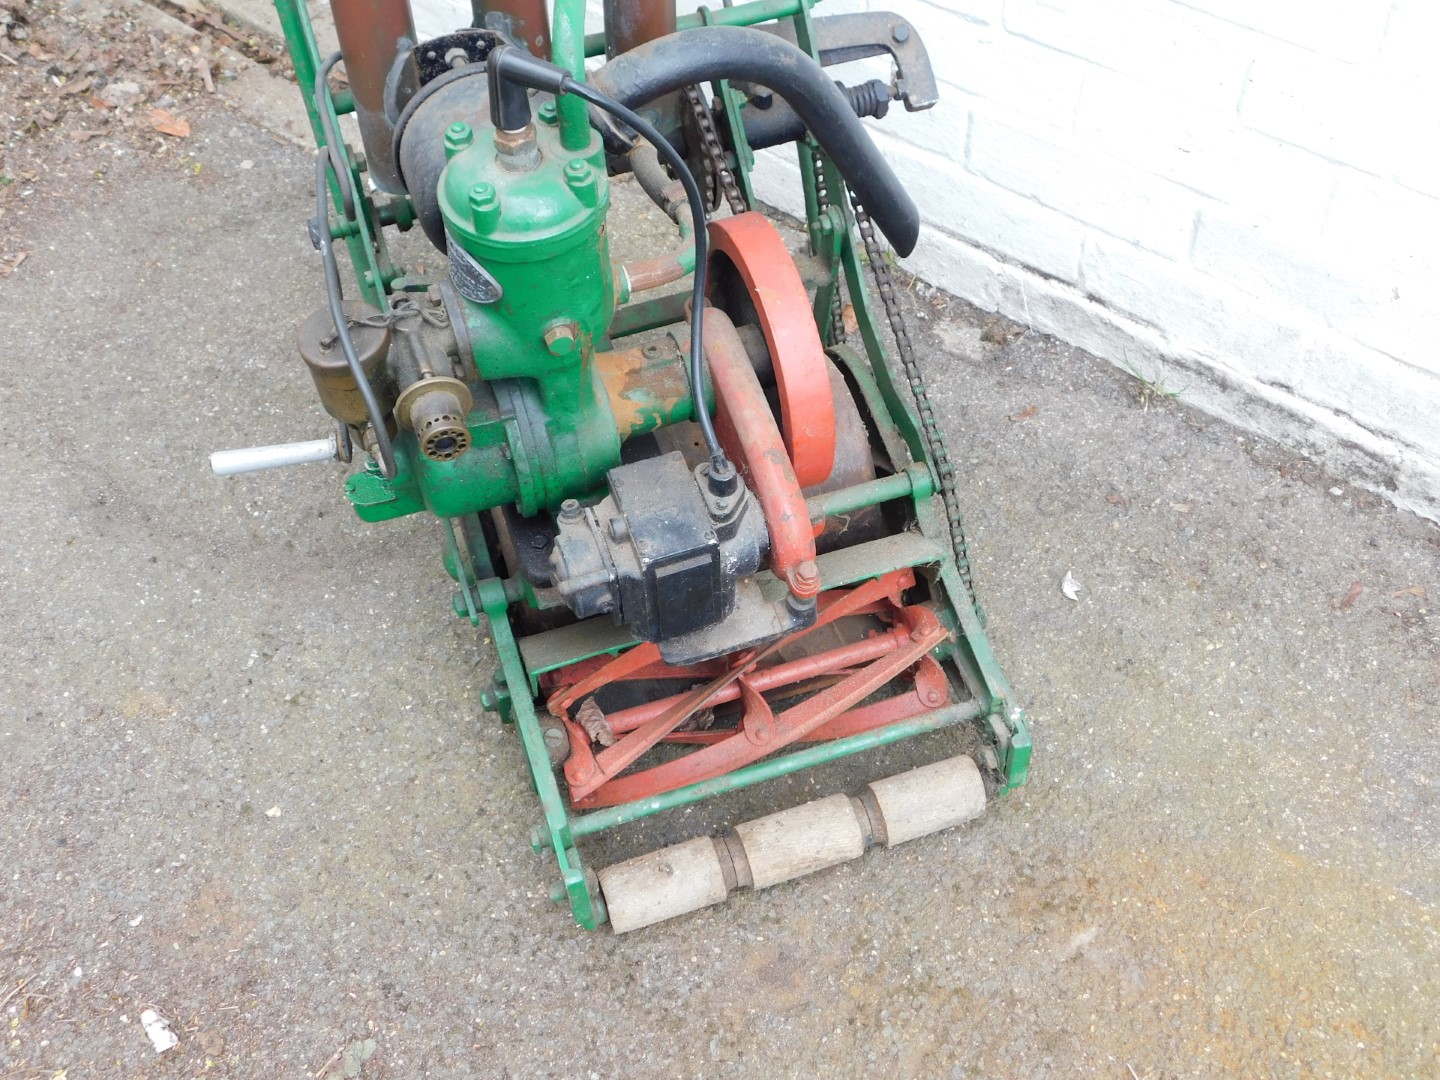 A Stuart Turner Ltd petrol lawn mower, No 6937. - Bild 3 aus 4